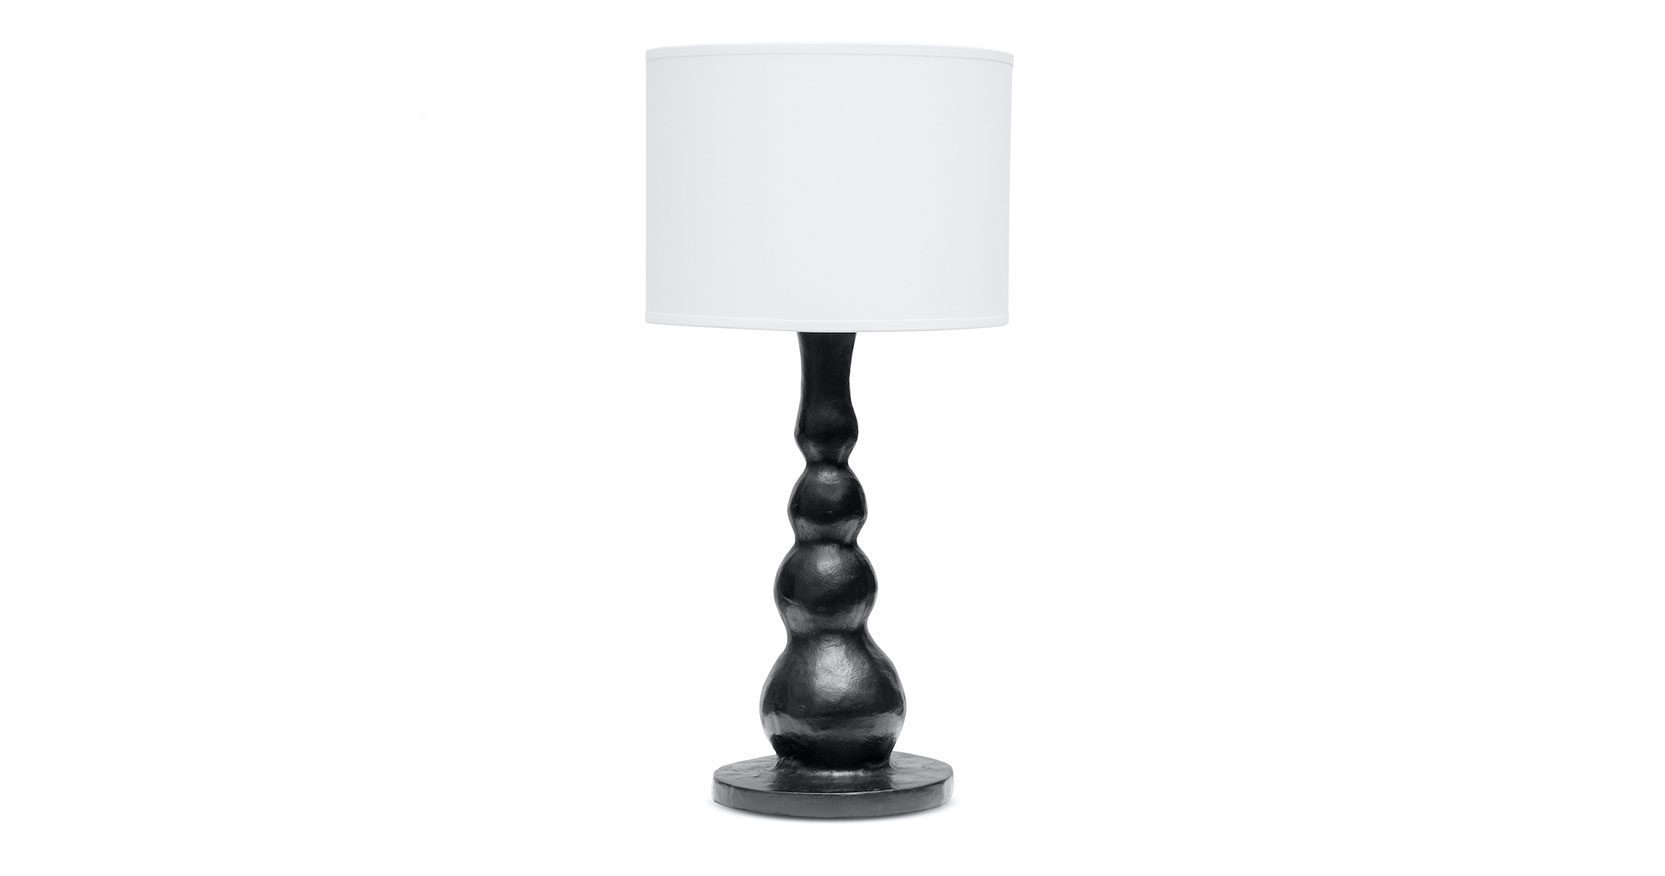 eric schmitt - french designer - contemporary design - eric schmitt lamp